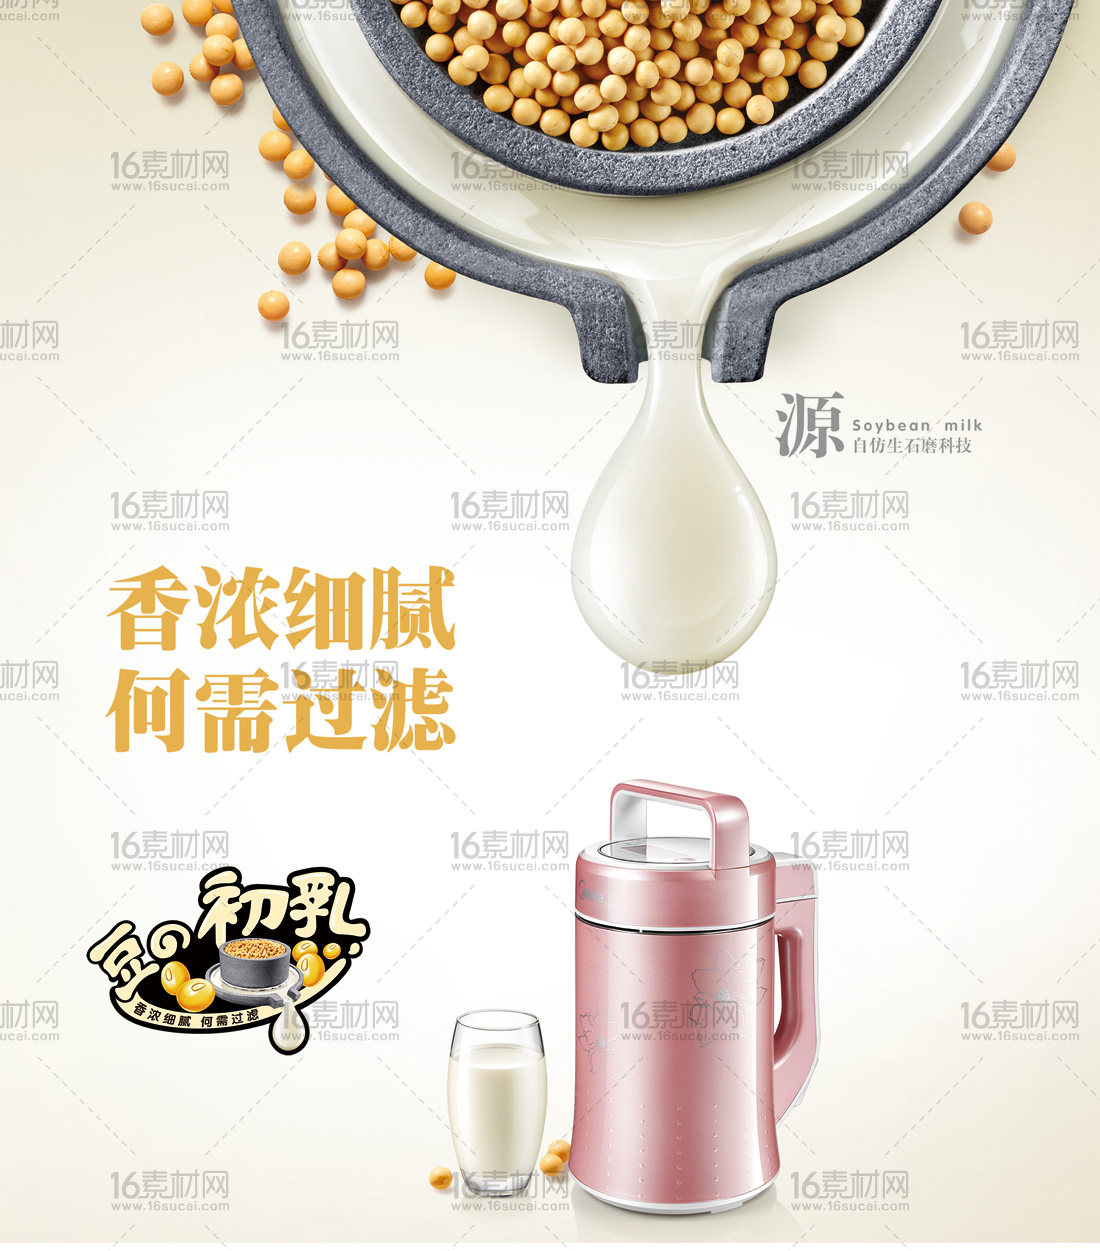 创意豆浆机宣传海报psd分层素材